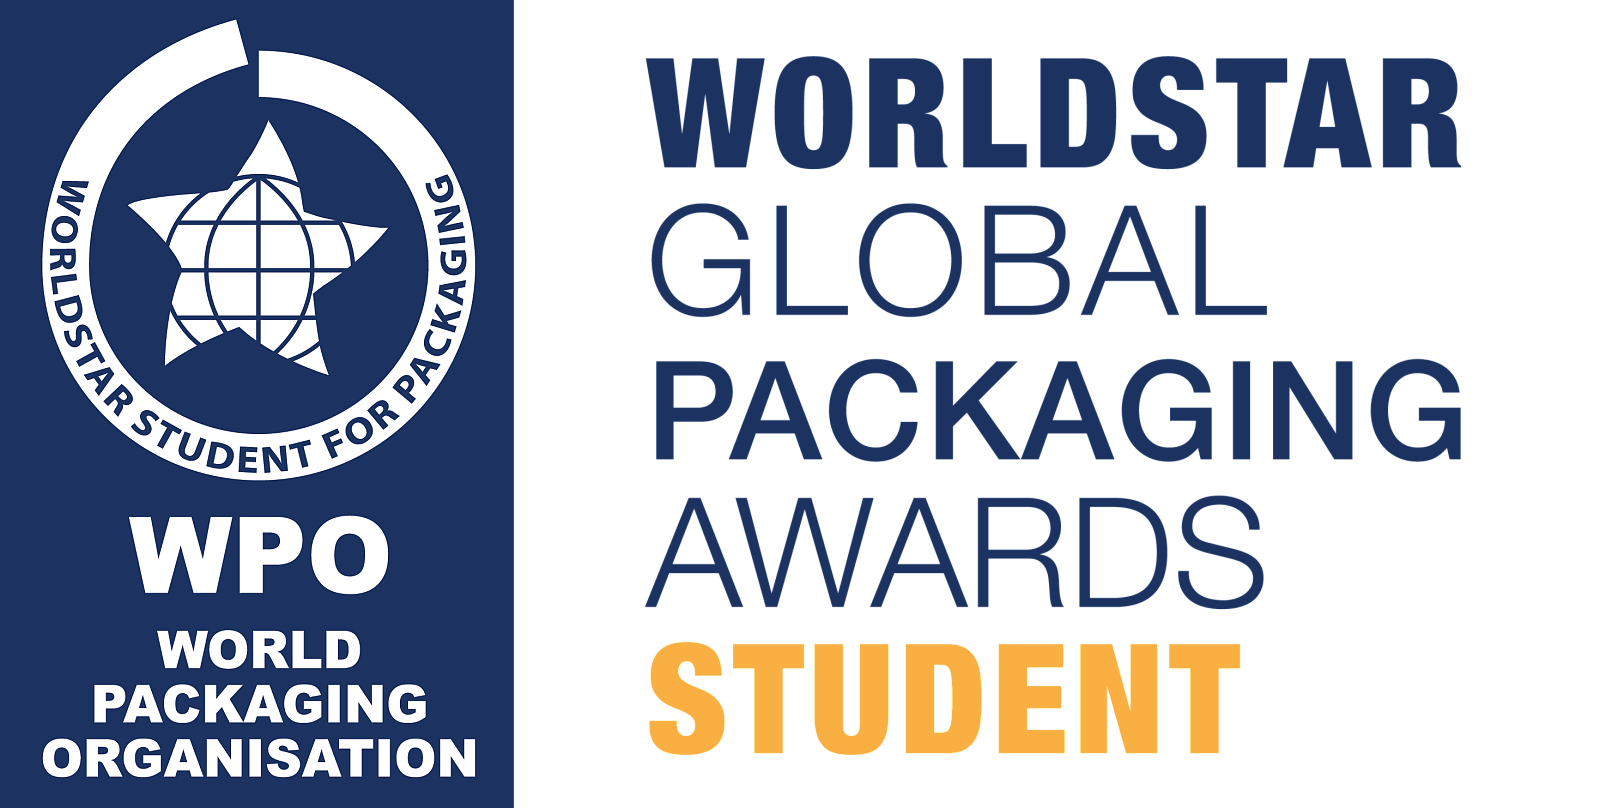 WorldStar Global Packaging Awards Student Logo.png [277.16 KB]